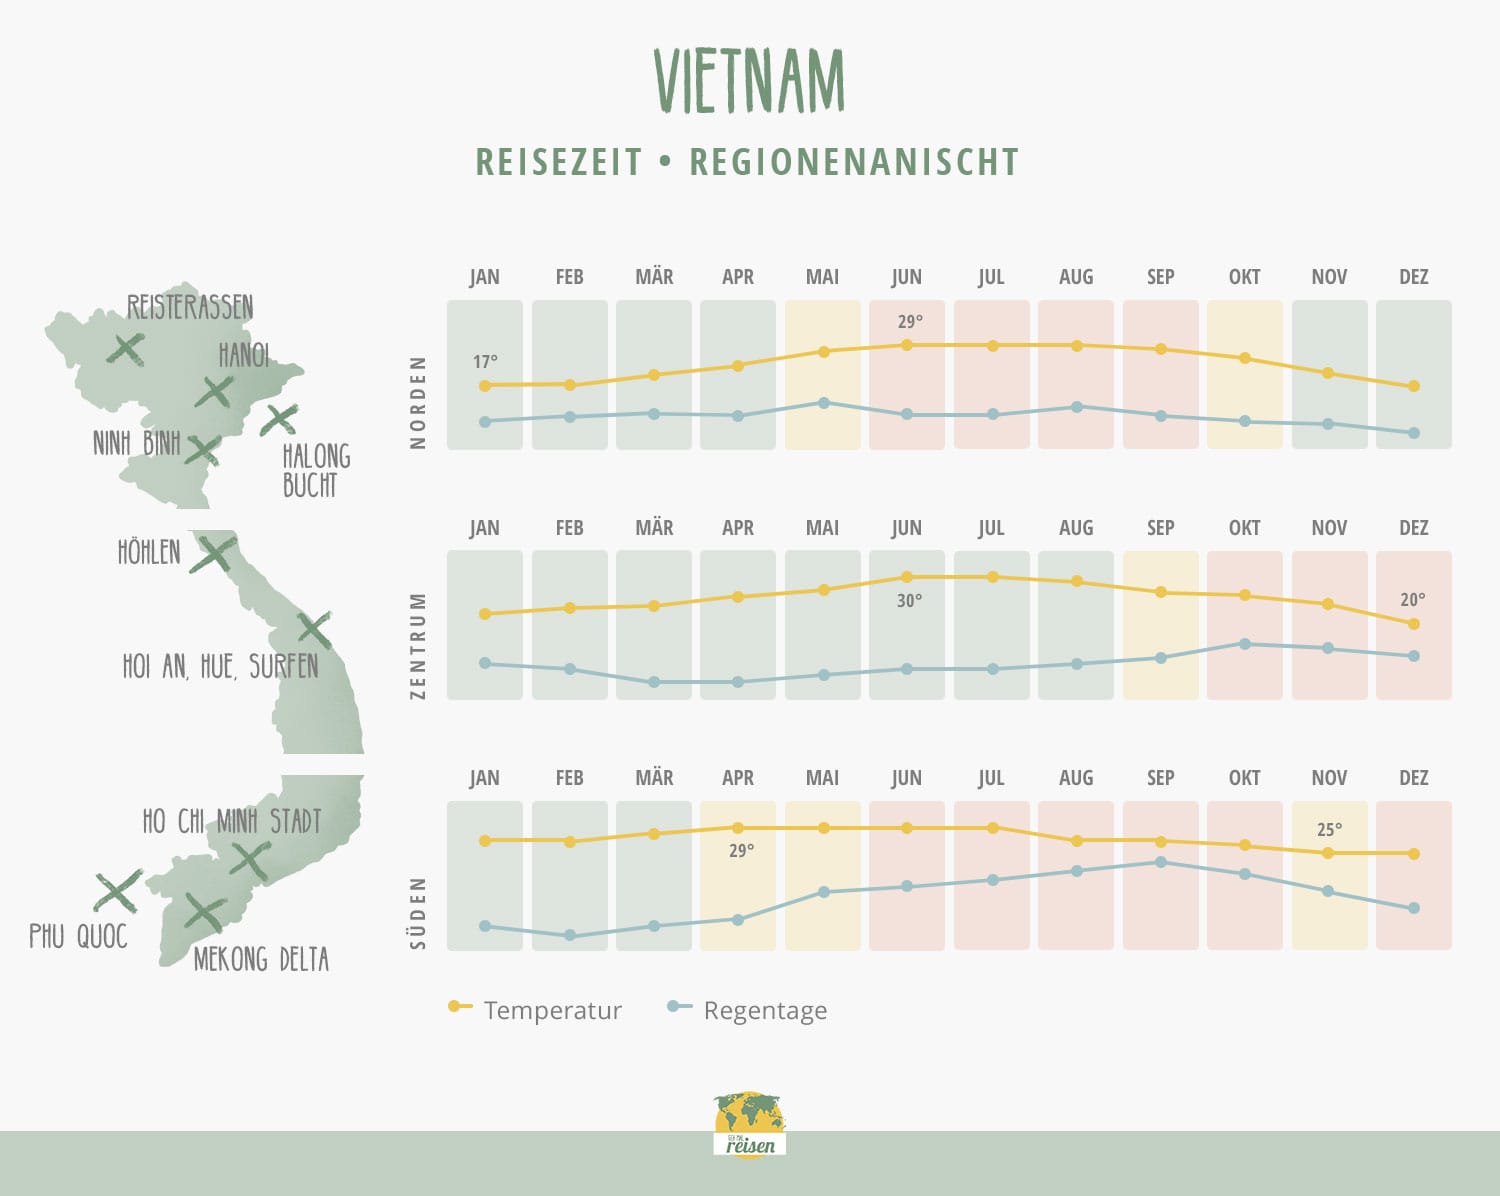 Vietnam Beste Reisezeit nach Regionen